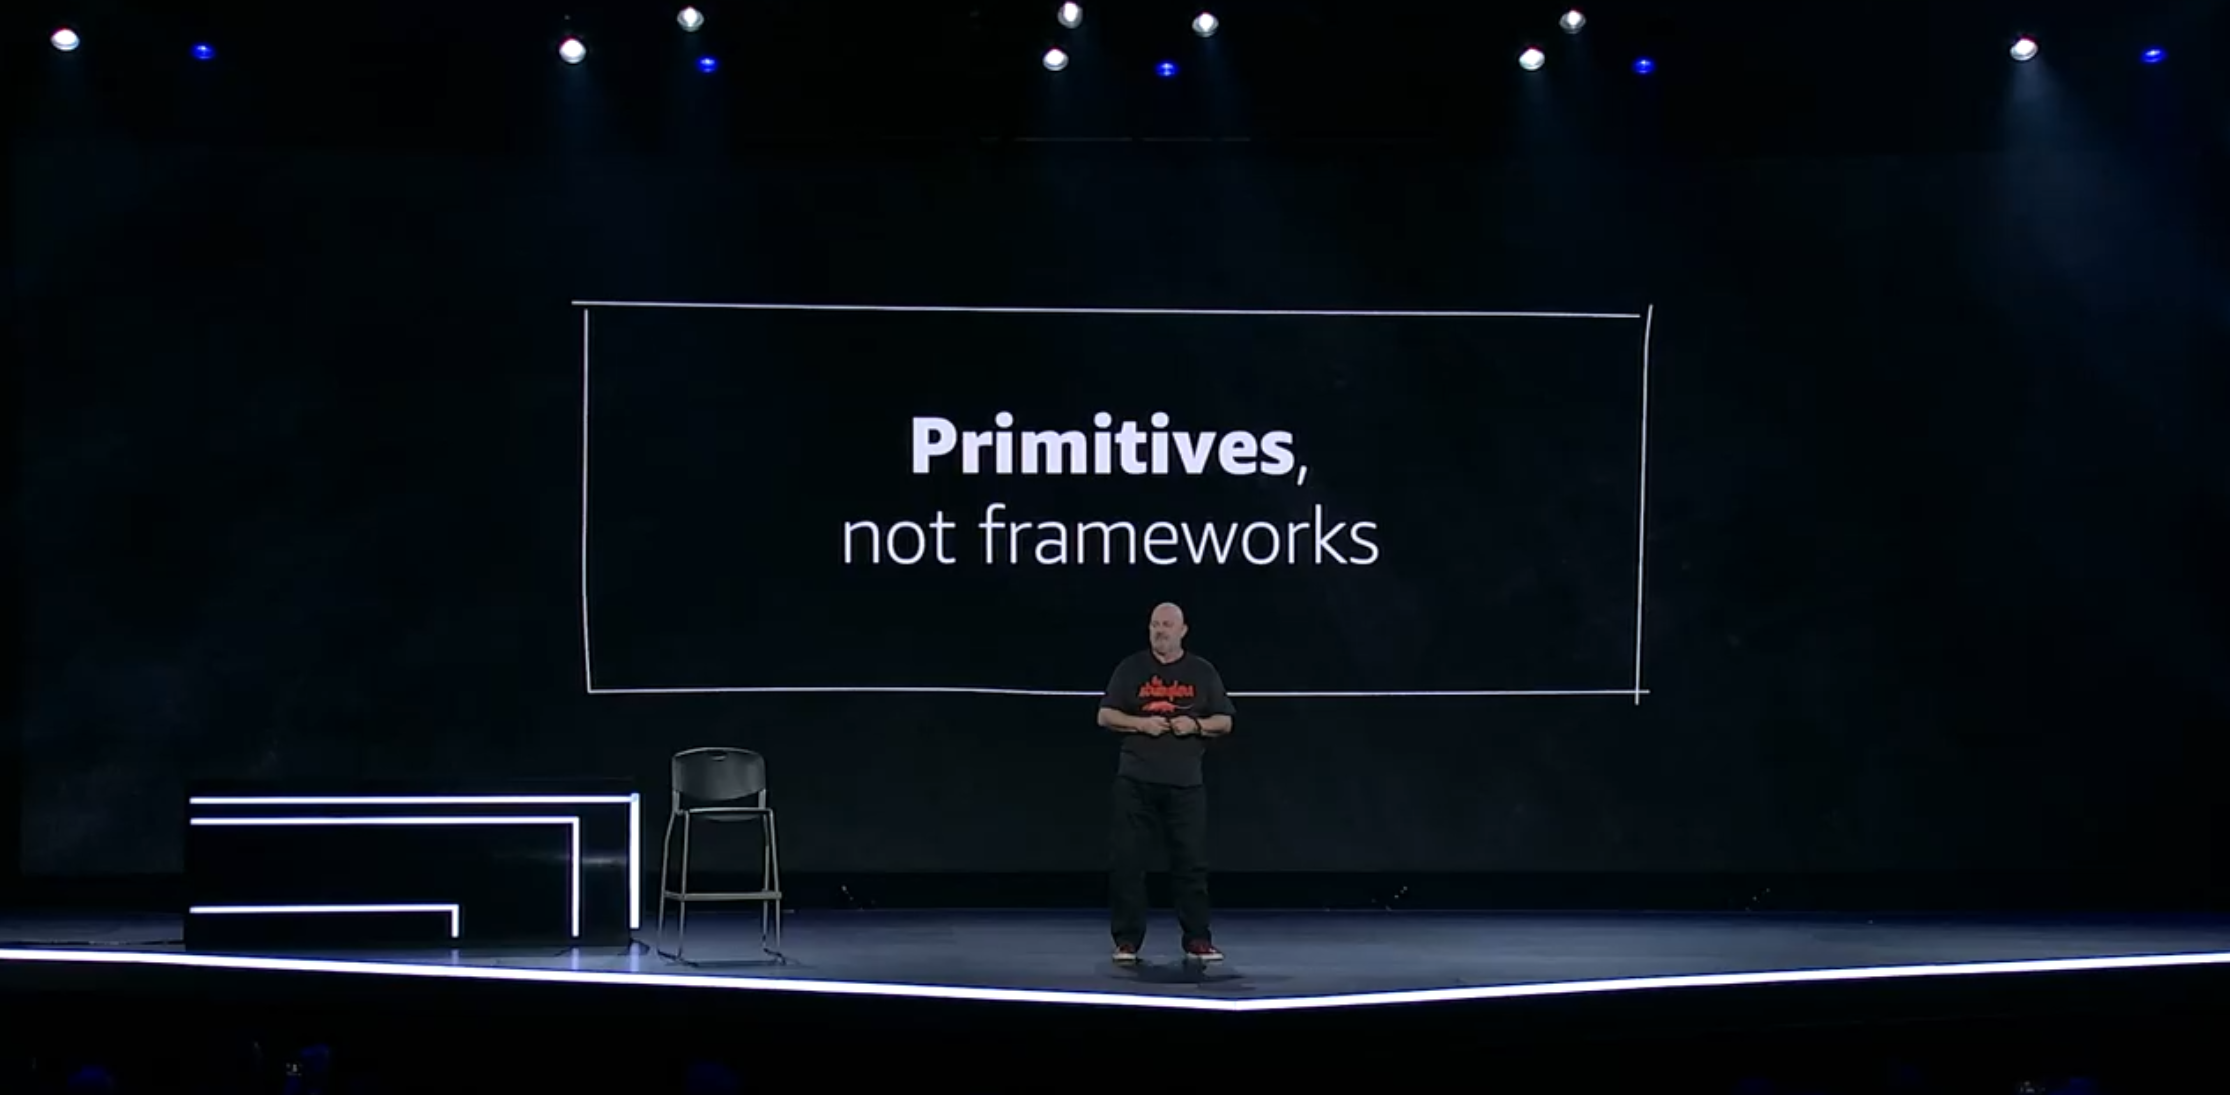 Werner on stage with slide, "Primitives, not frameworks"